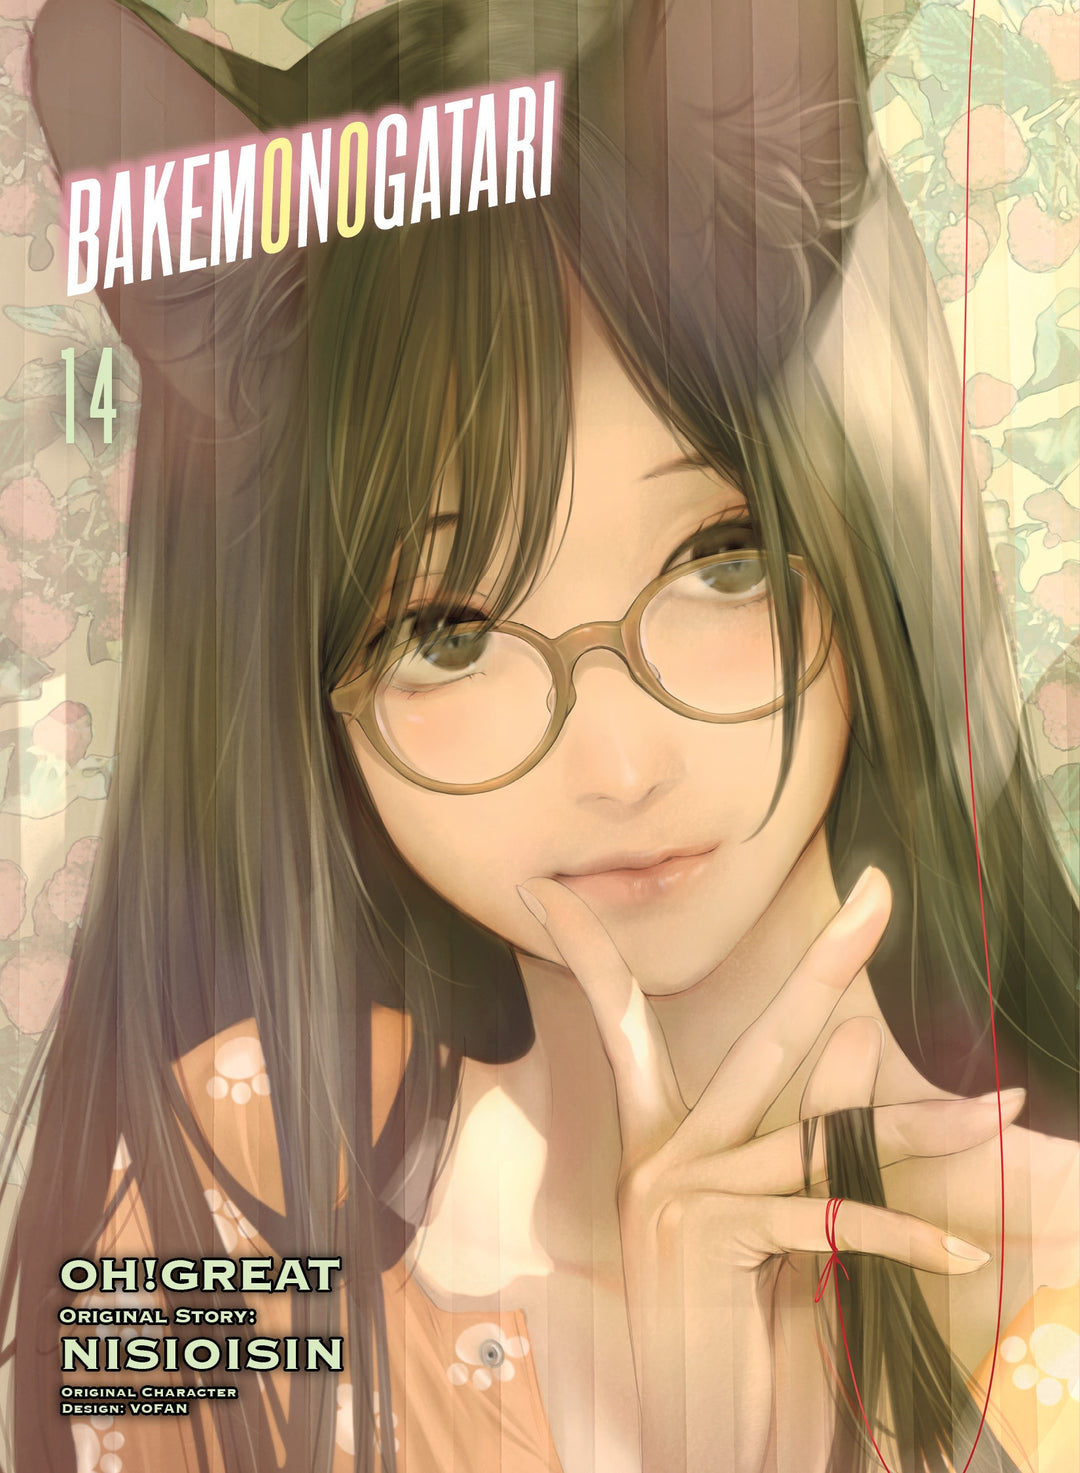 BAKEMONOGATARI (manga), Vol. 14